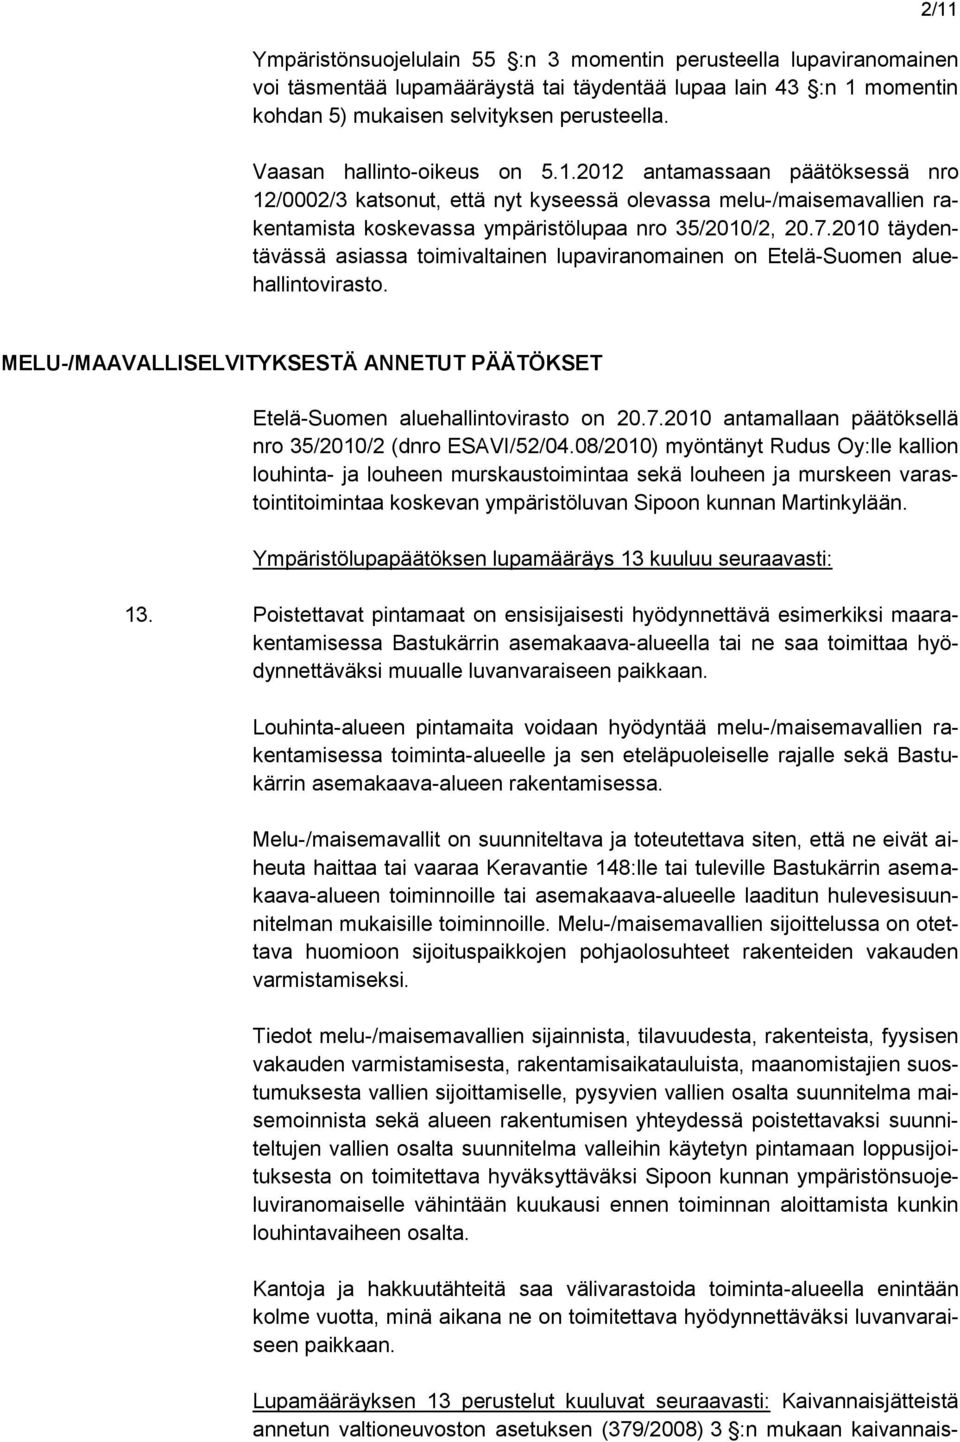 2010 täydentävässä asiassa toimivaltainen lupaviranomainen on Etelä-Suomen aluehallintovirasto. MELU-/MAAVALLISELVITYKSESTÄ ANNETUT PÄÄTÖKSET Etelä-Suomen aluehallintovirasto on 20.7.